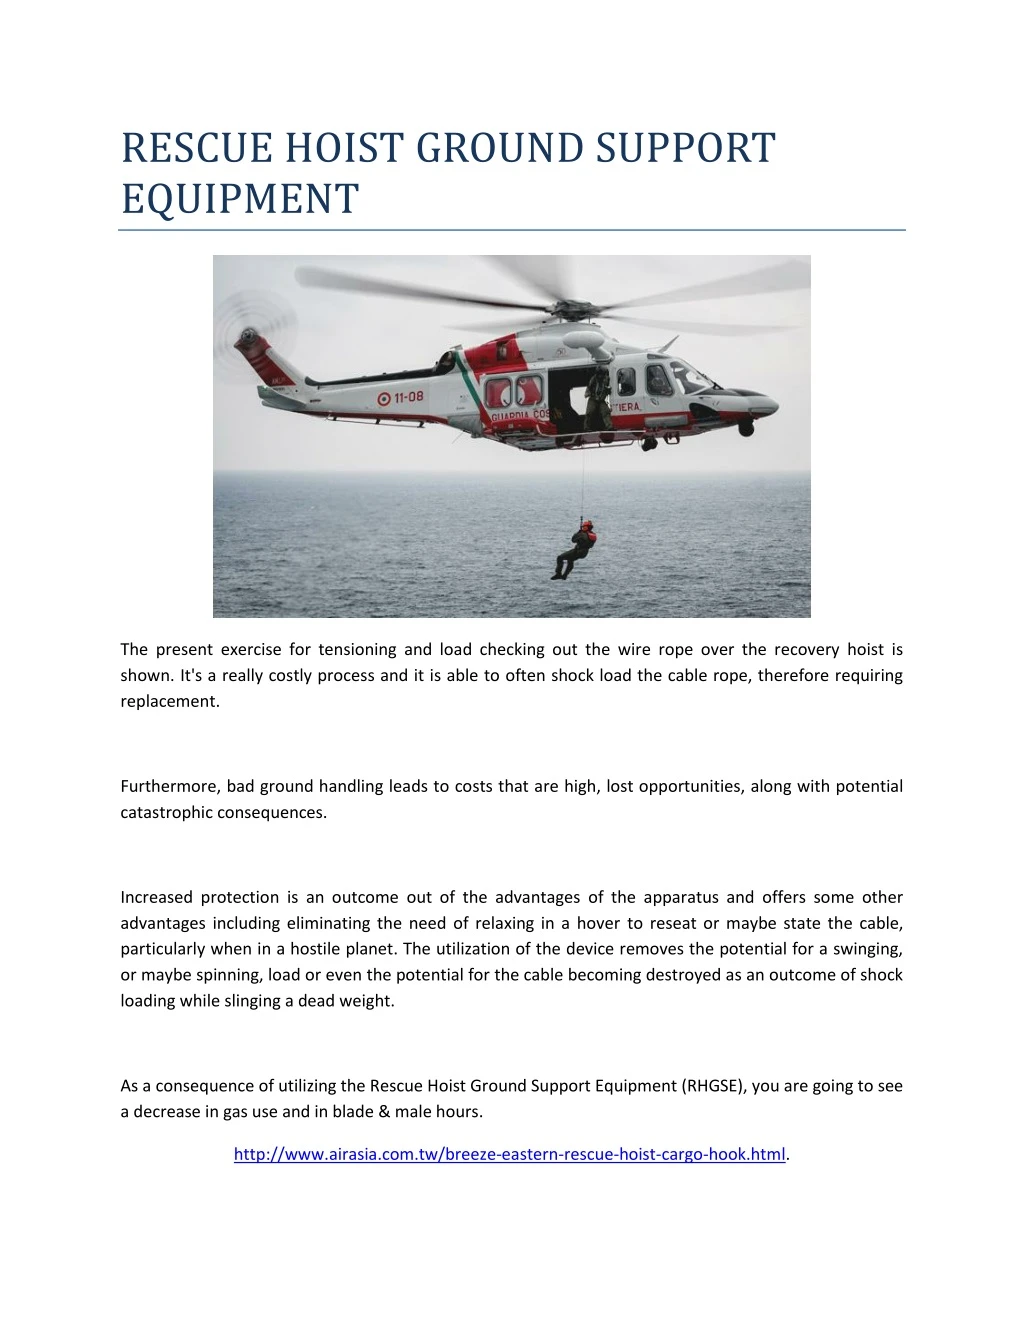 rescue hoist ground support equipment